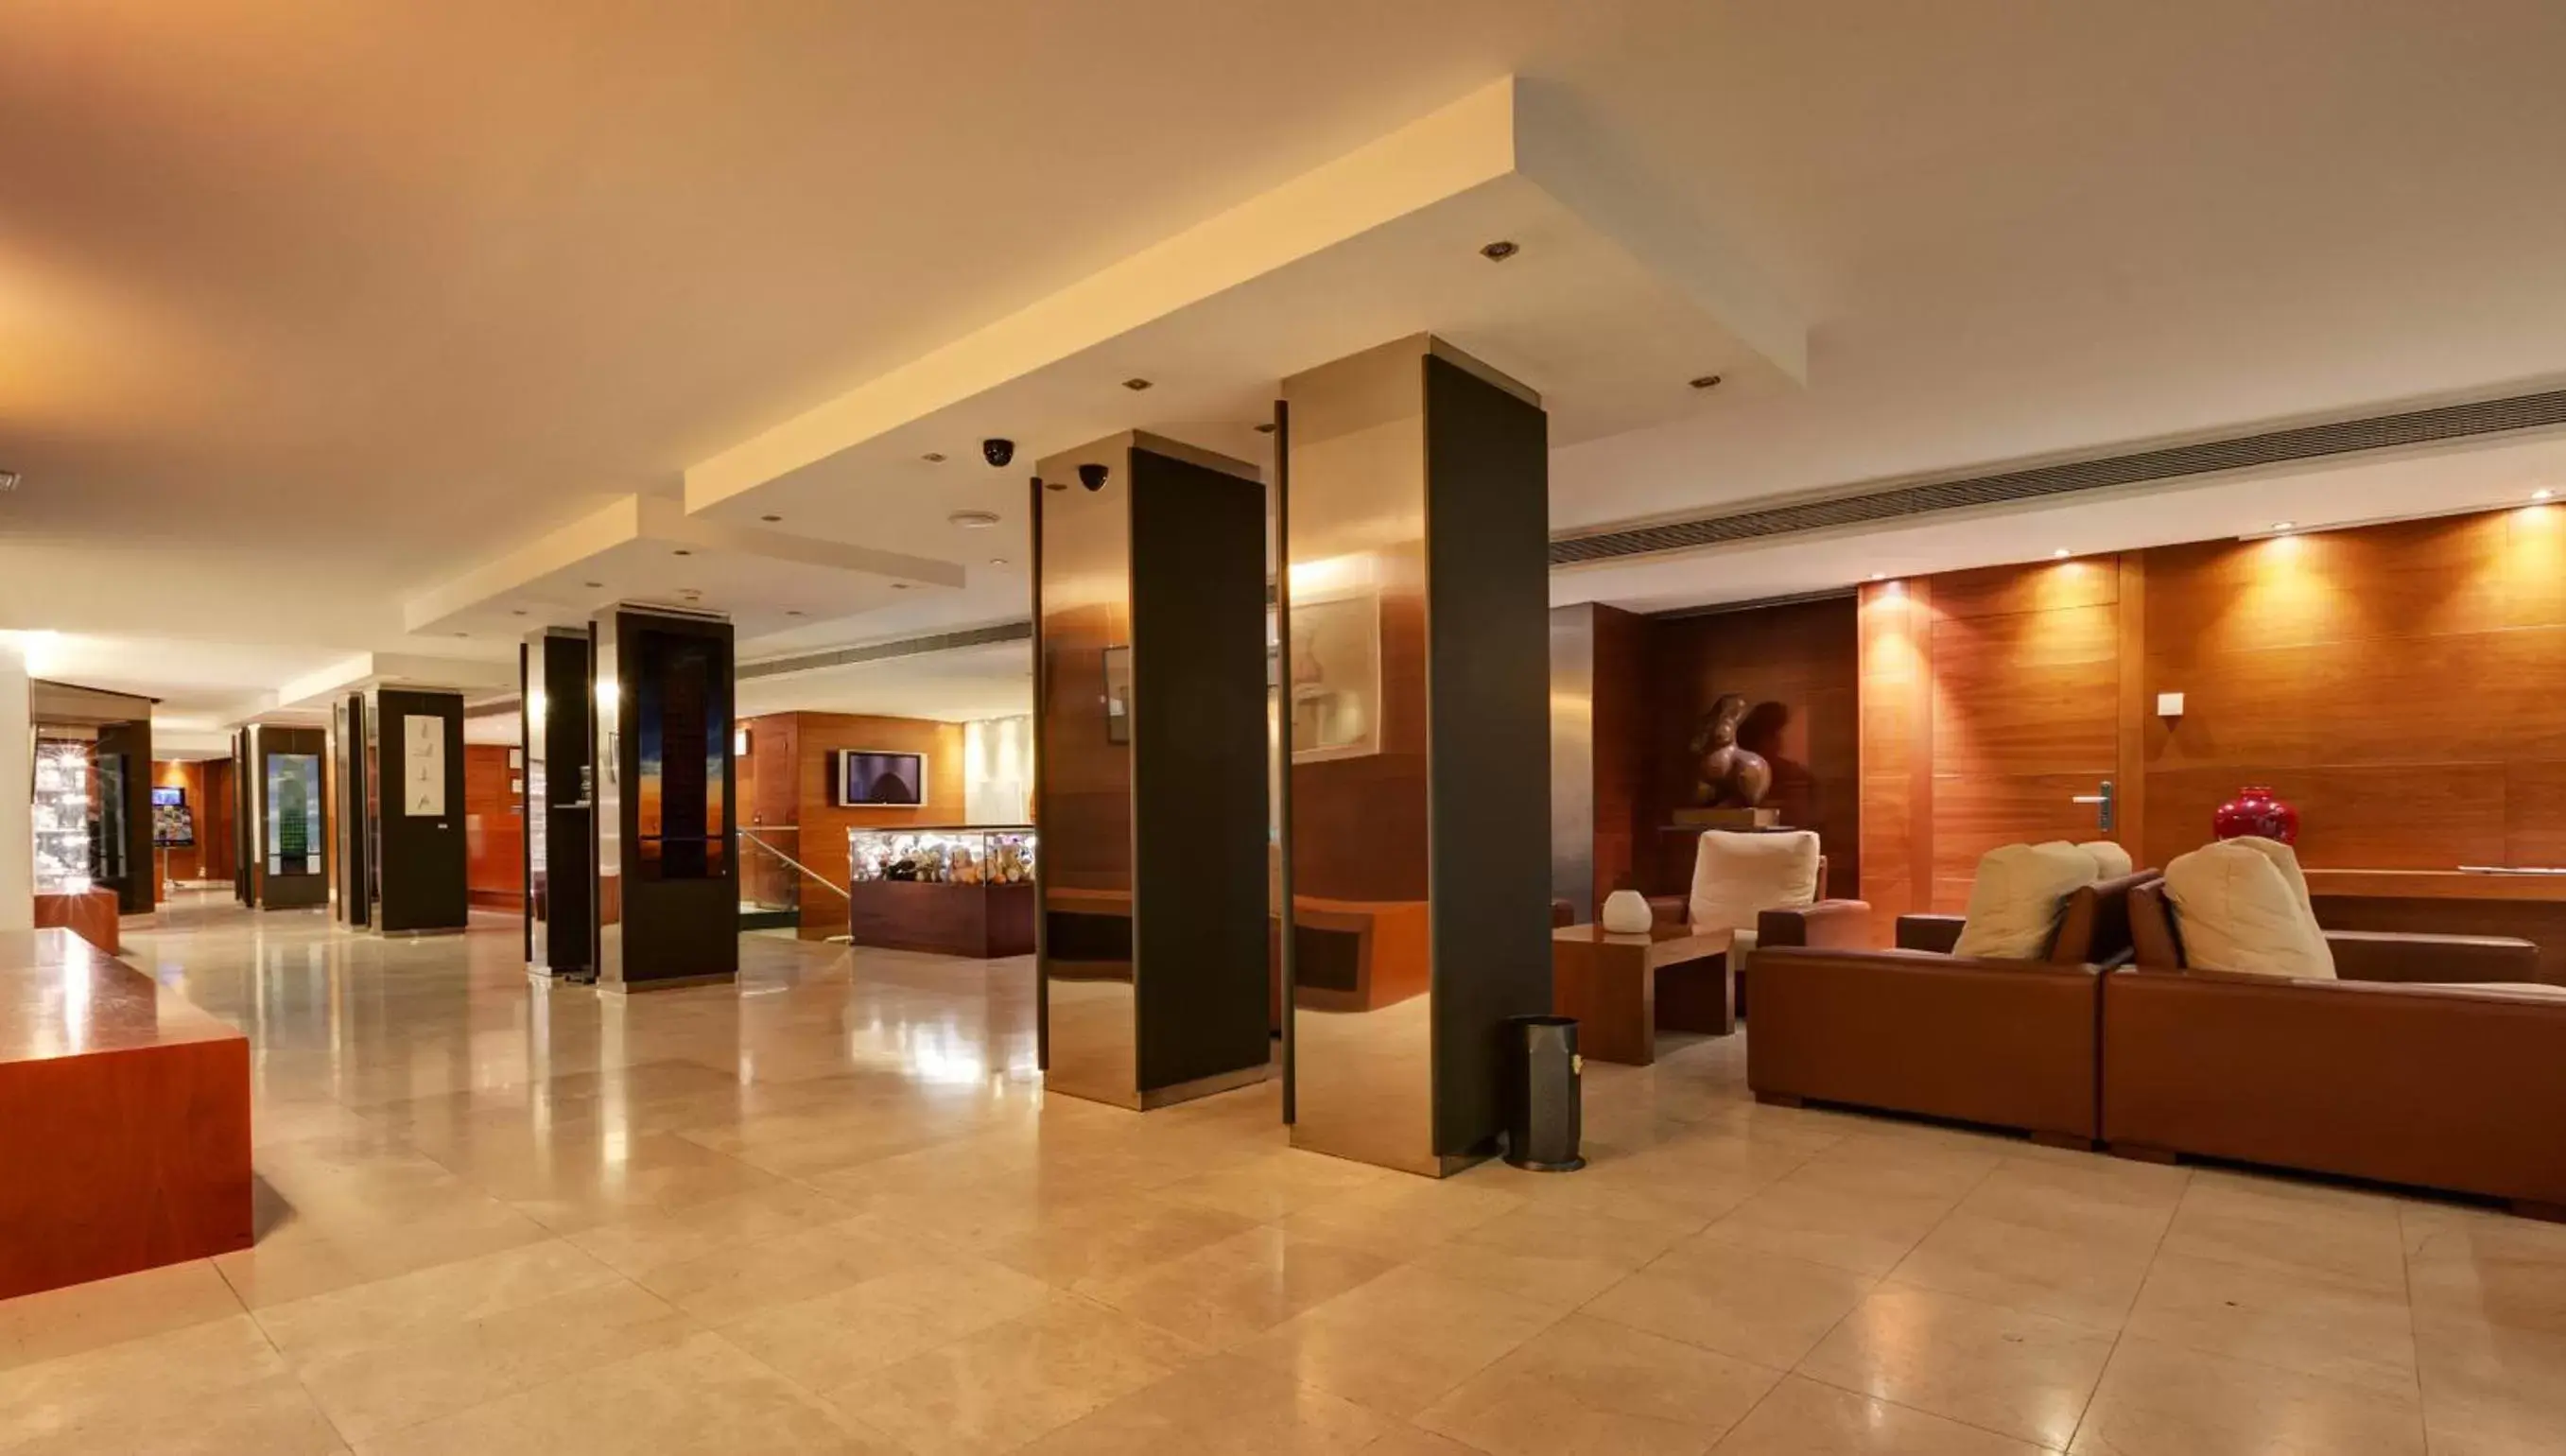 Area and facilities, Lobby/Reception in Acevi Villarroel